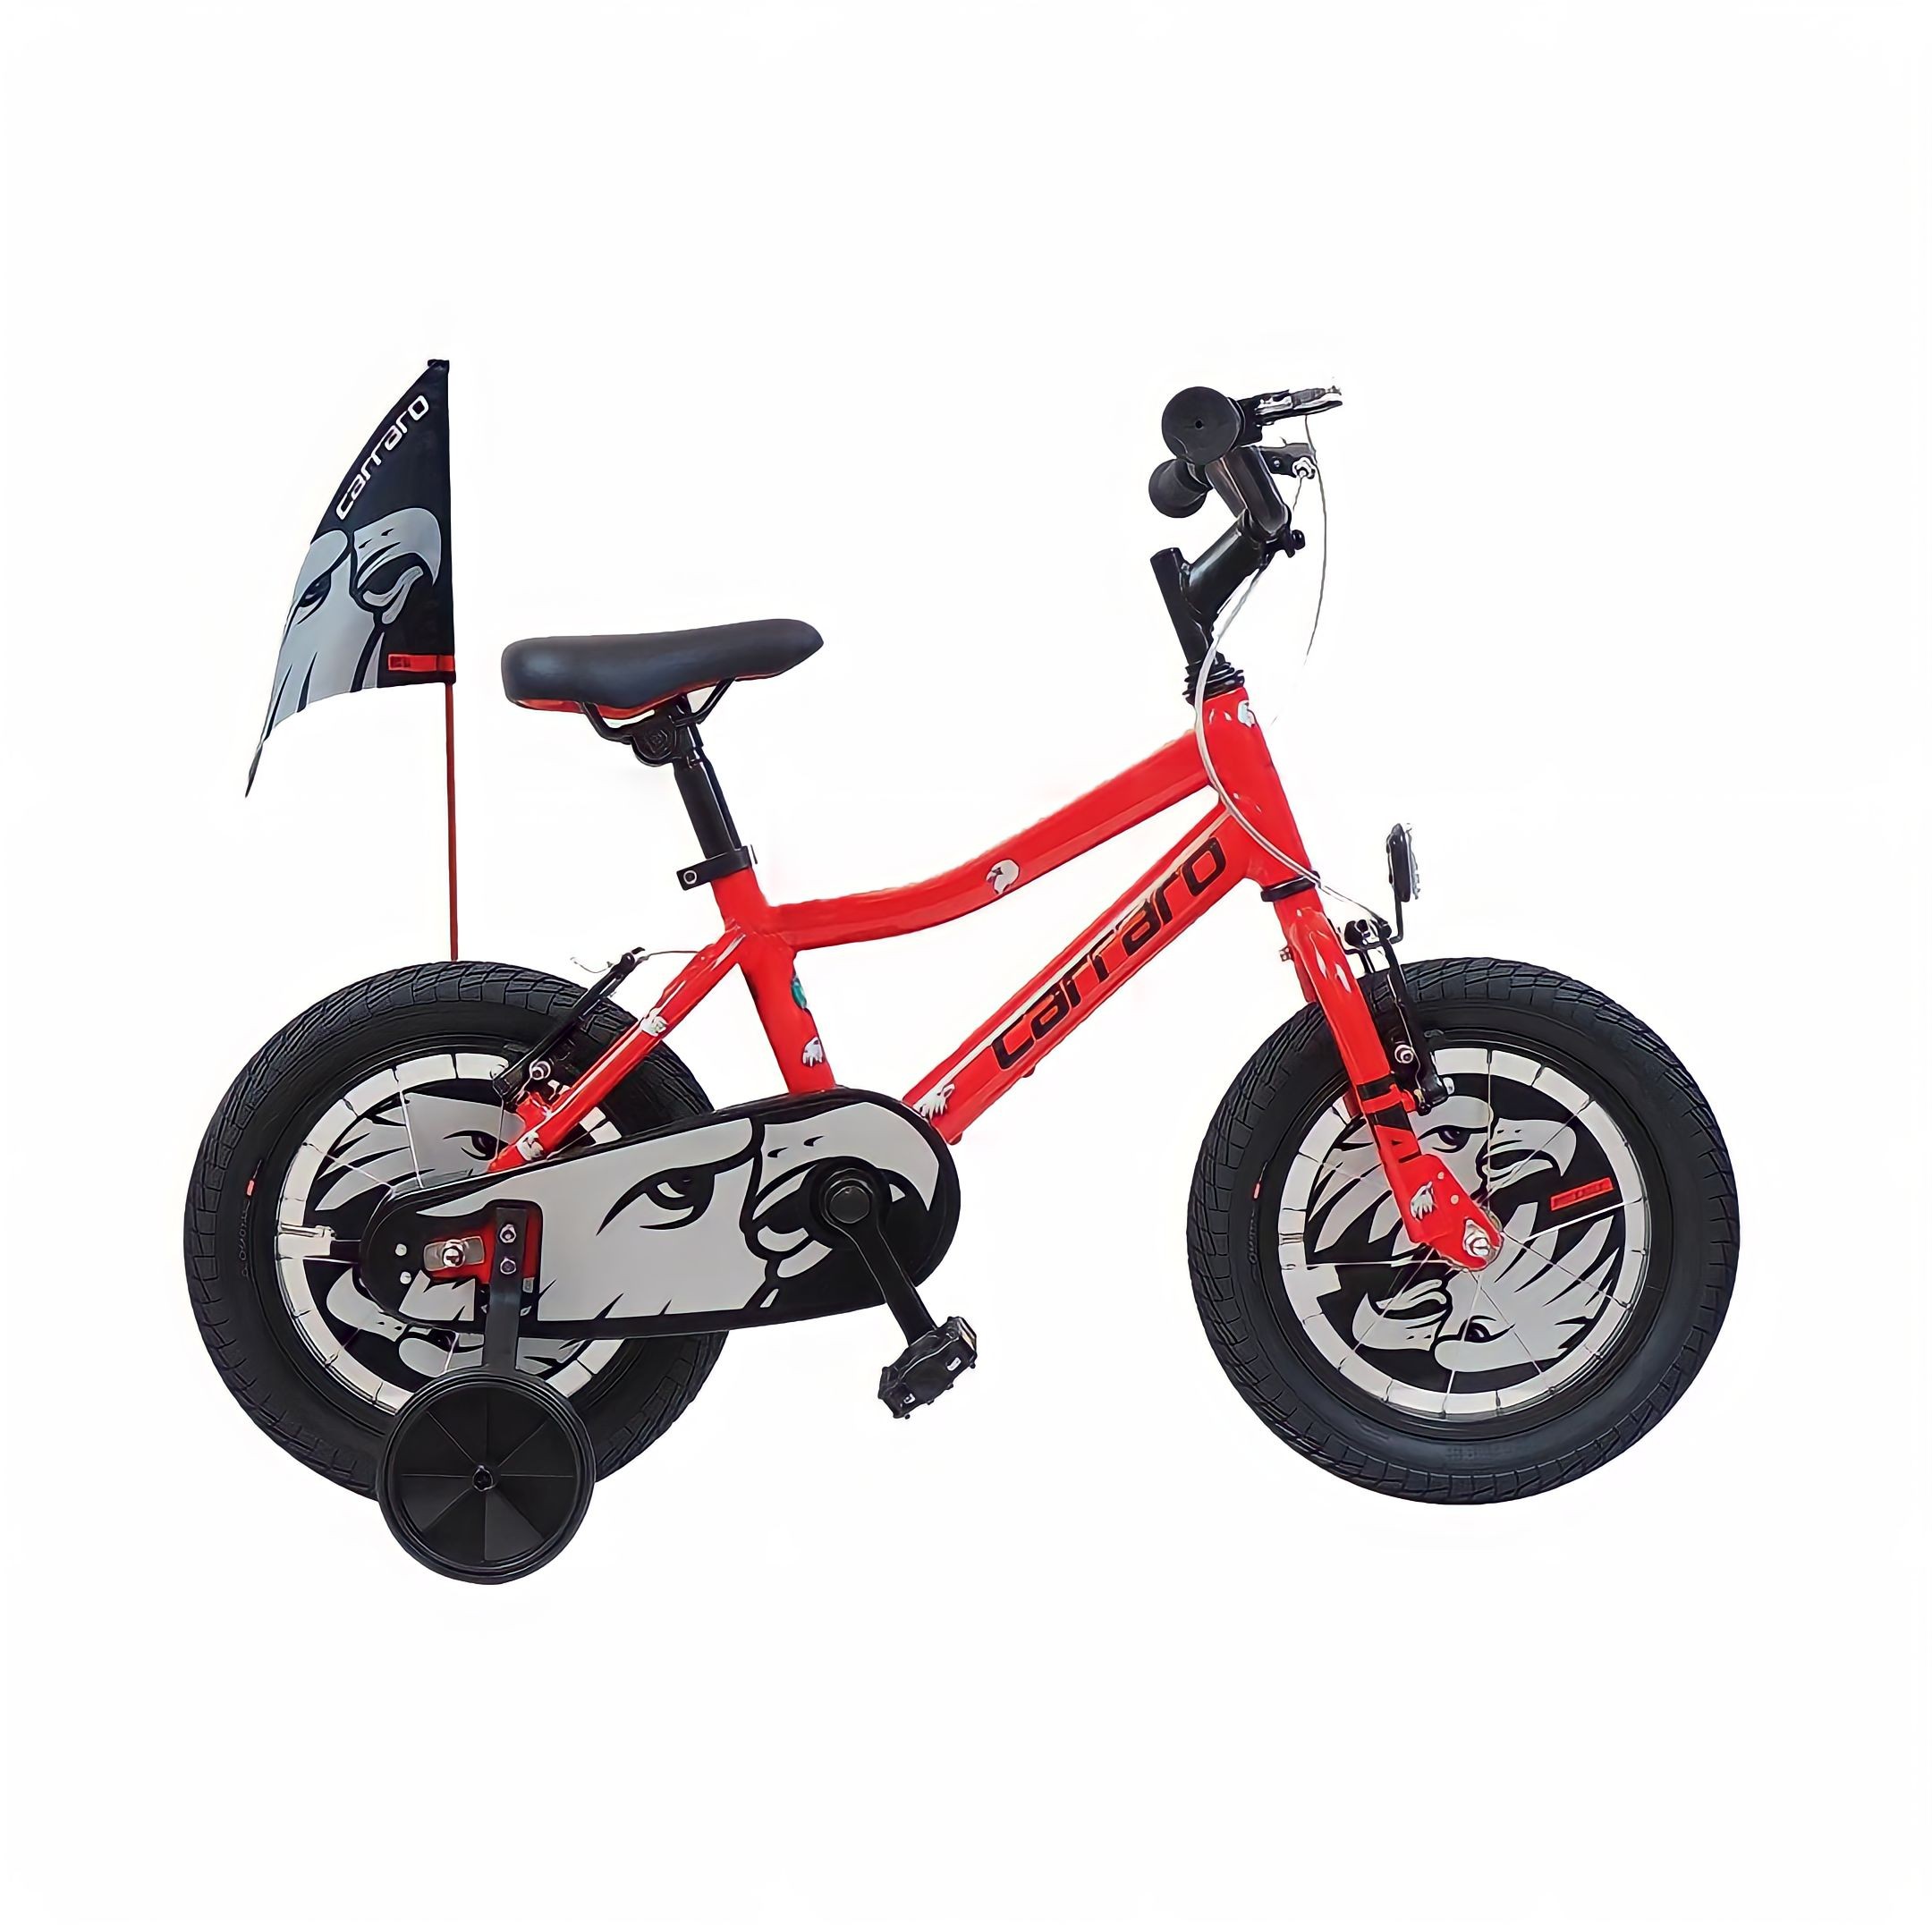 Carraro Red Eagle 16 jant Vitessiz Çocuk Bisikleti